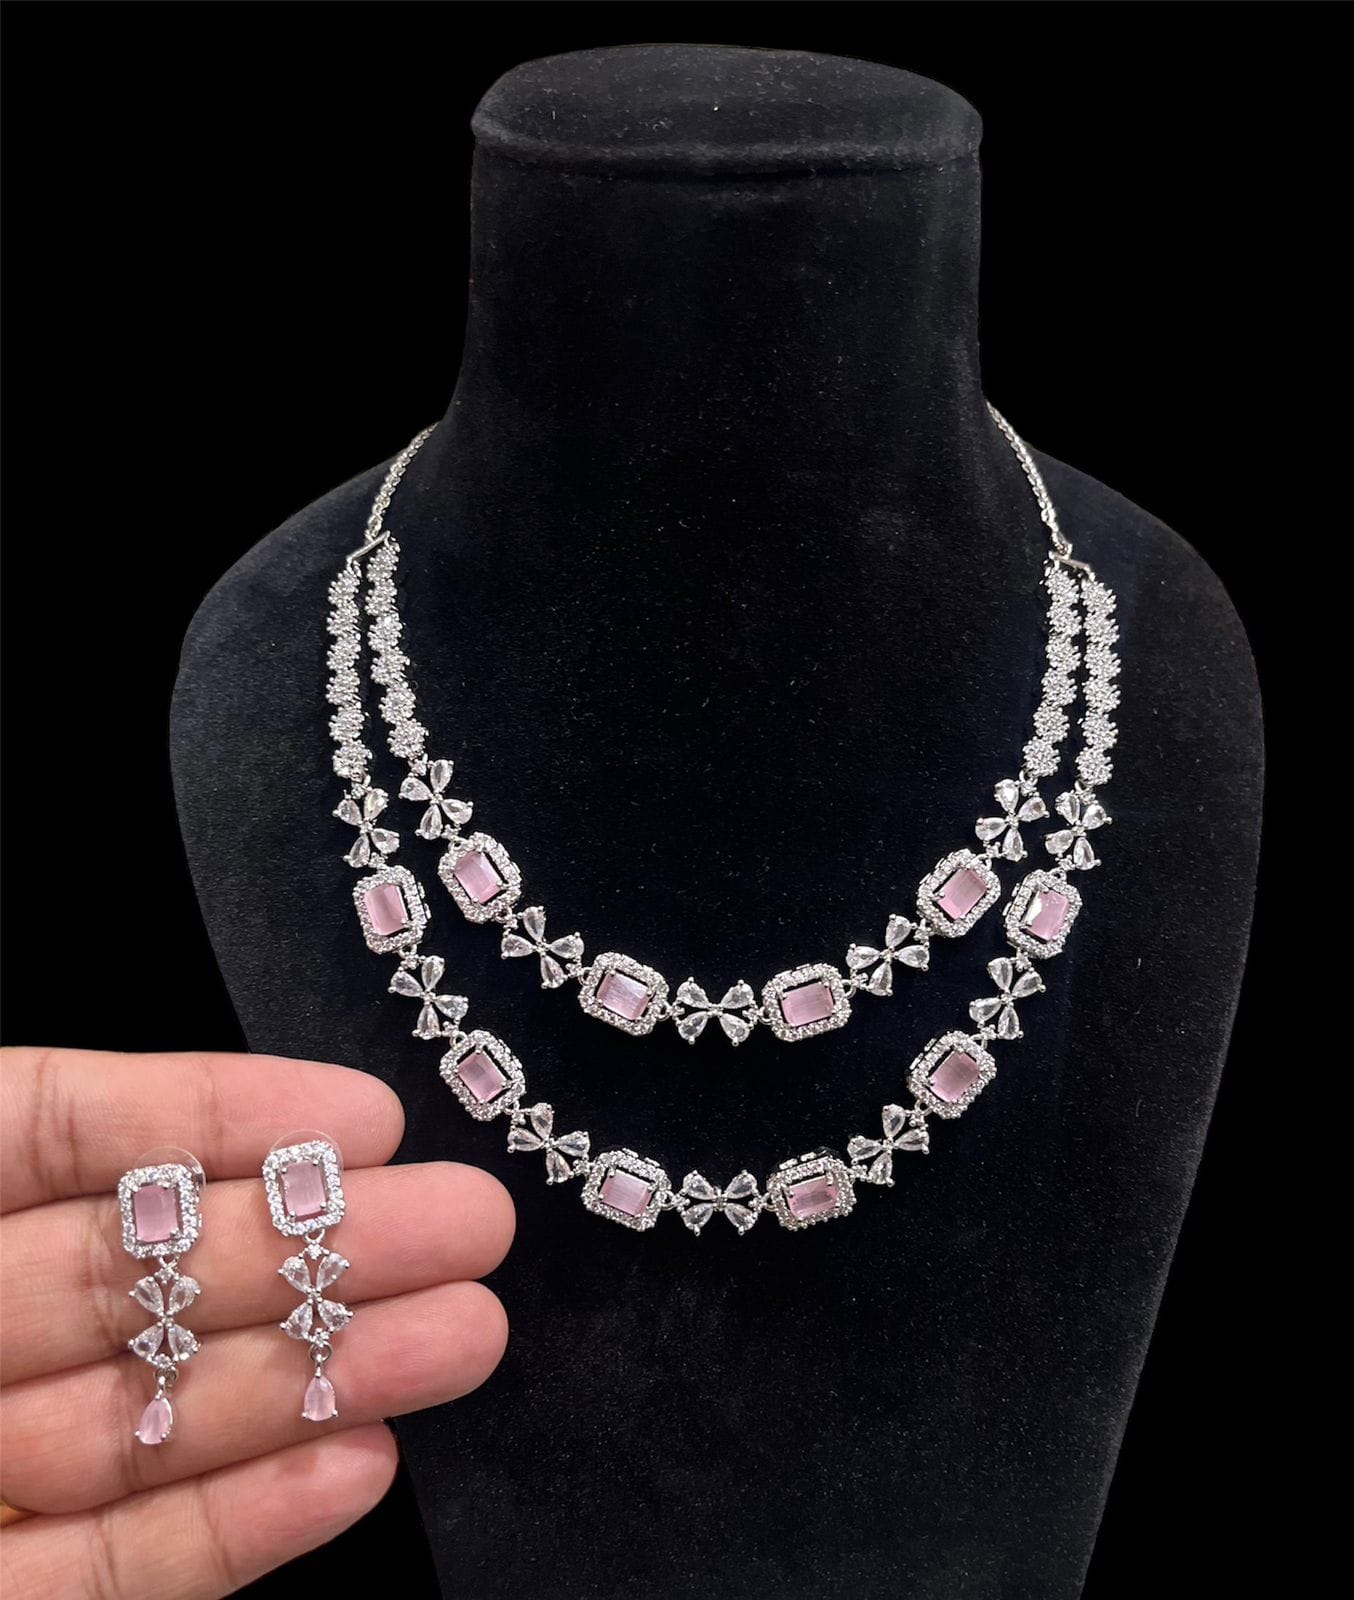 37 carat pink diamond necklace | Pink diamond necklaces, Pink diamond,  Jewelry